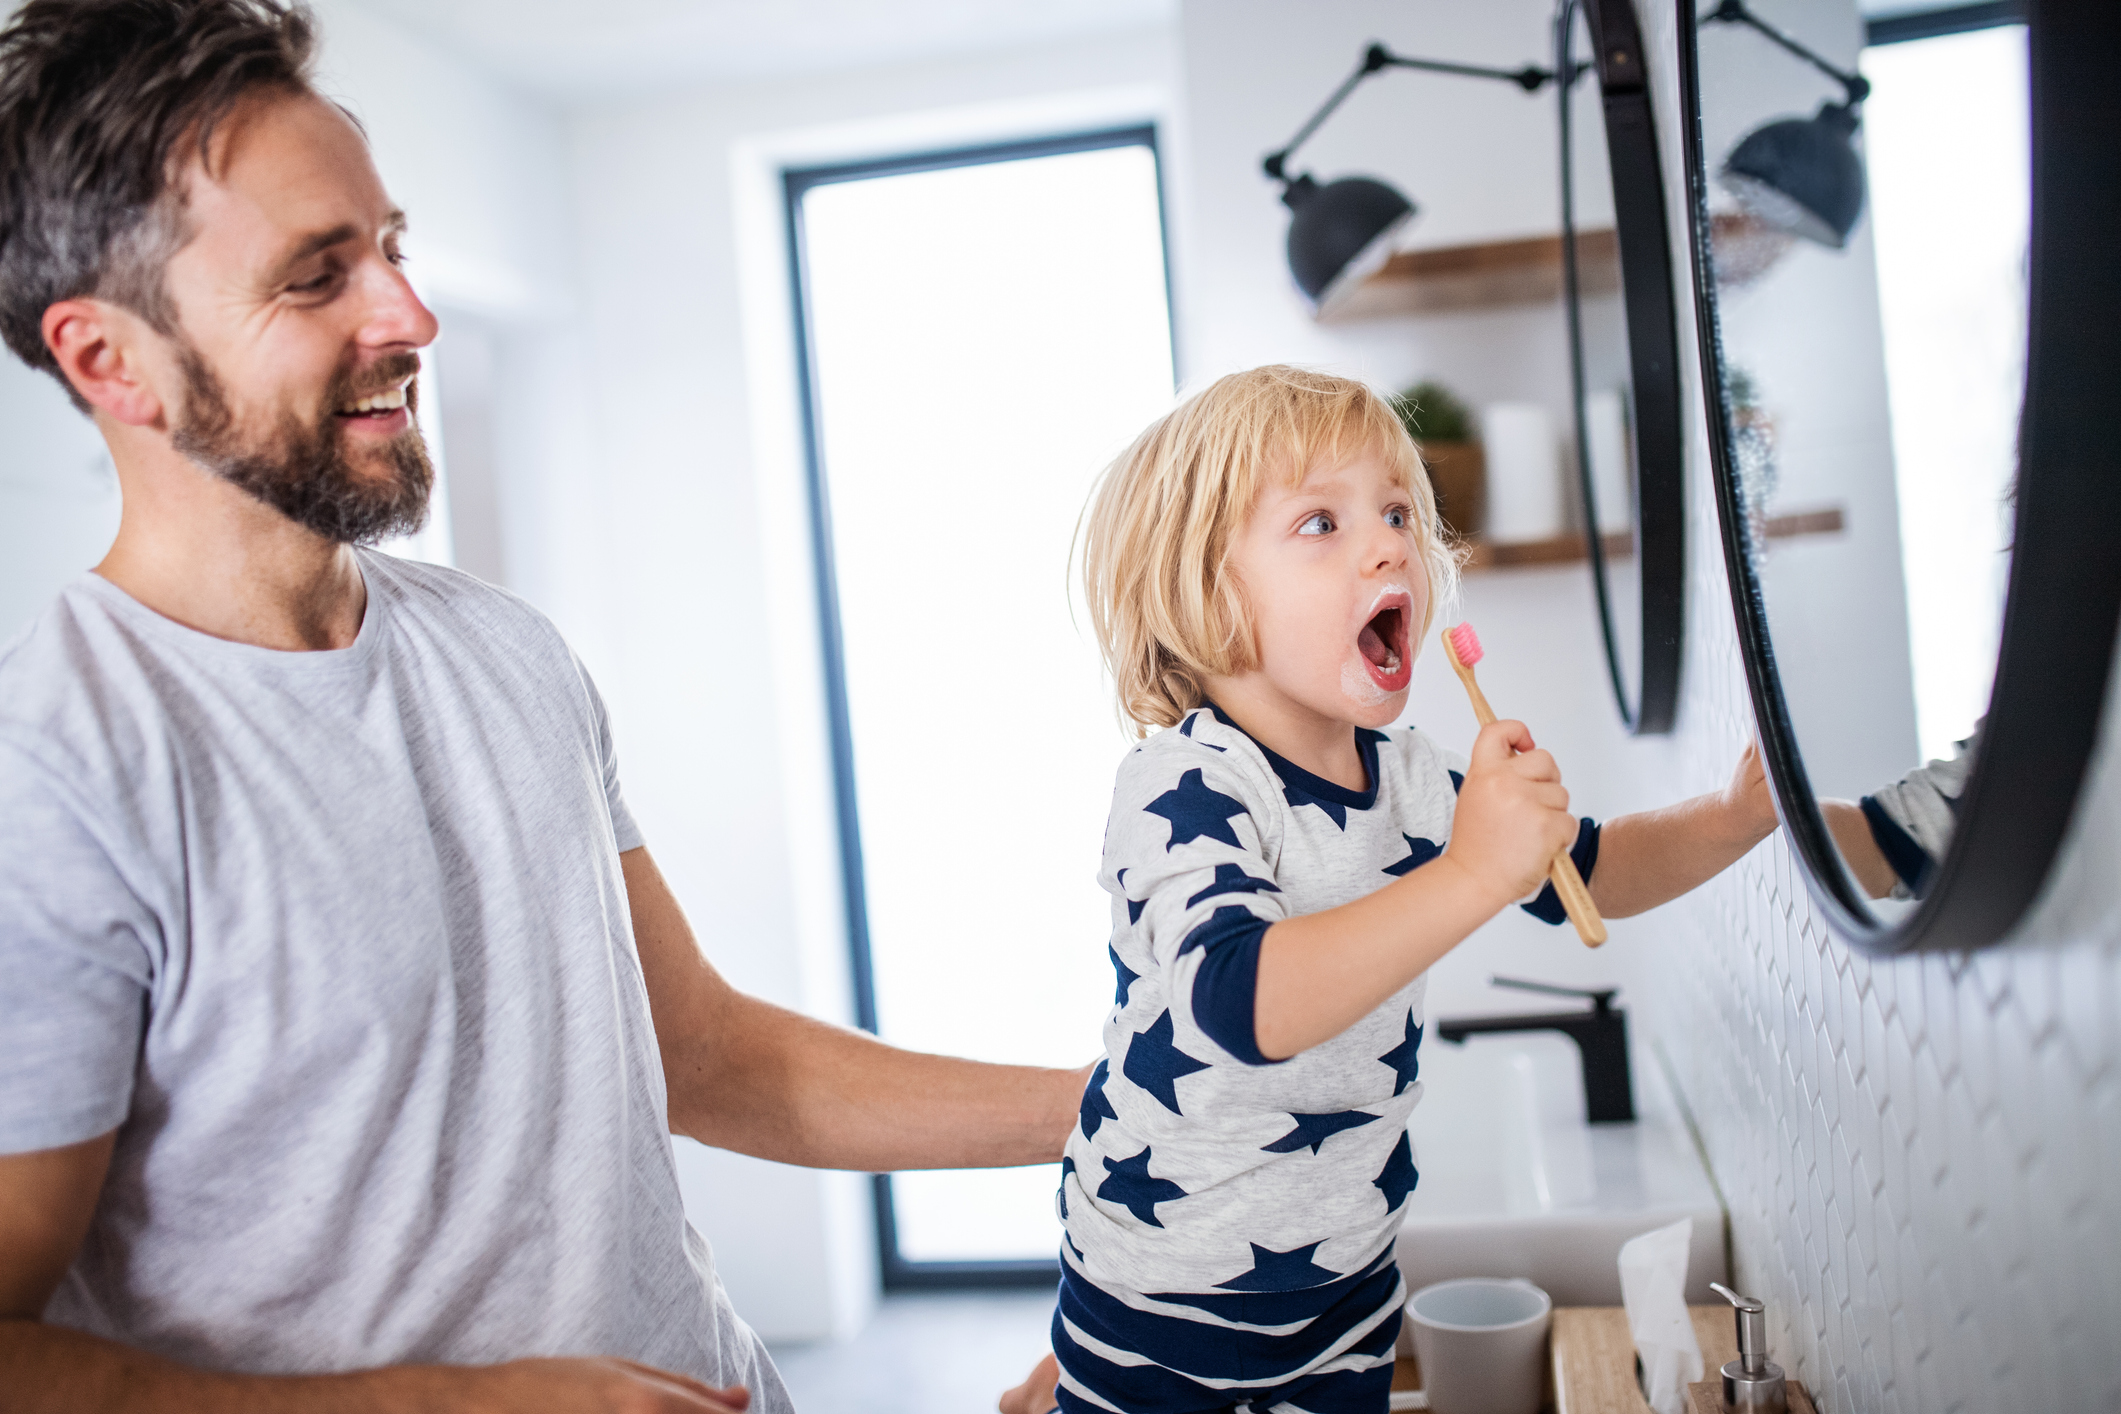 Lapsen hampaiden pesu voi myös helpottua peilin edessä. Kuvassa lapsi katselee itseään ihmetellen peilistä, kun harjaa hampaitaan.